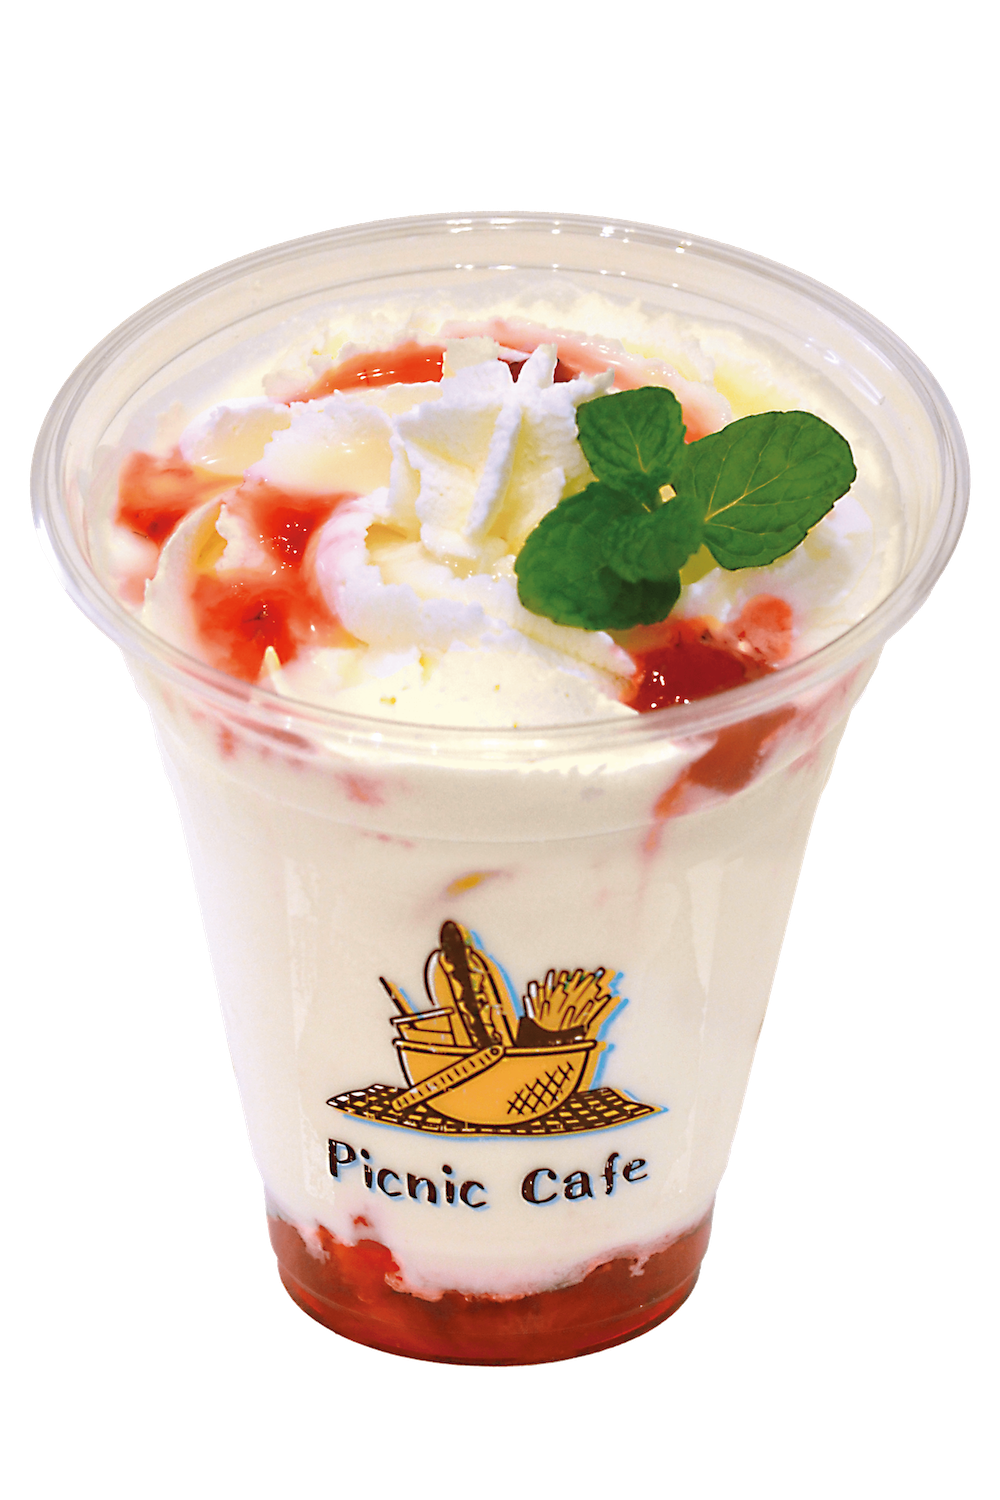 「ピクニックカフェ」で提供する「丹那牛乳のプレミアムいちごミルク」800円